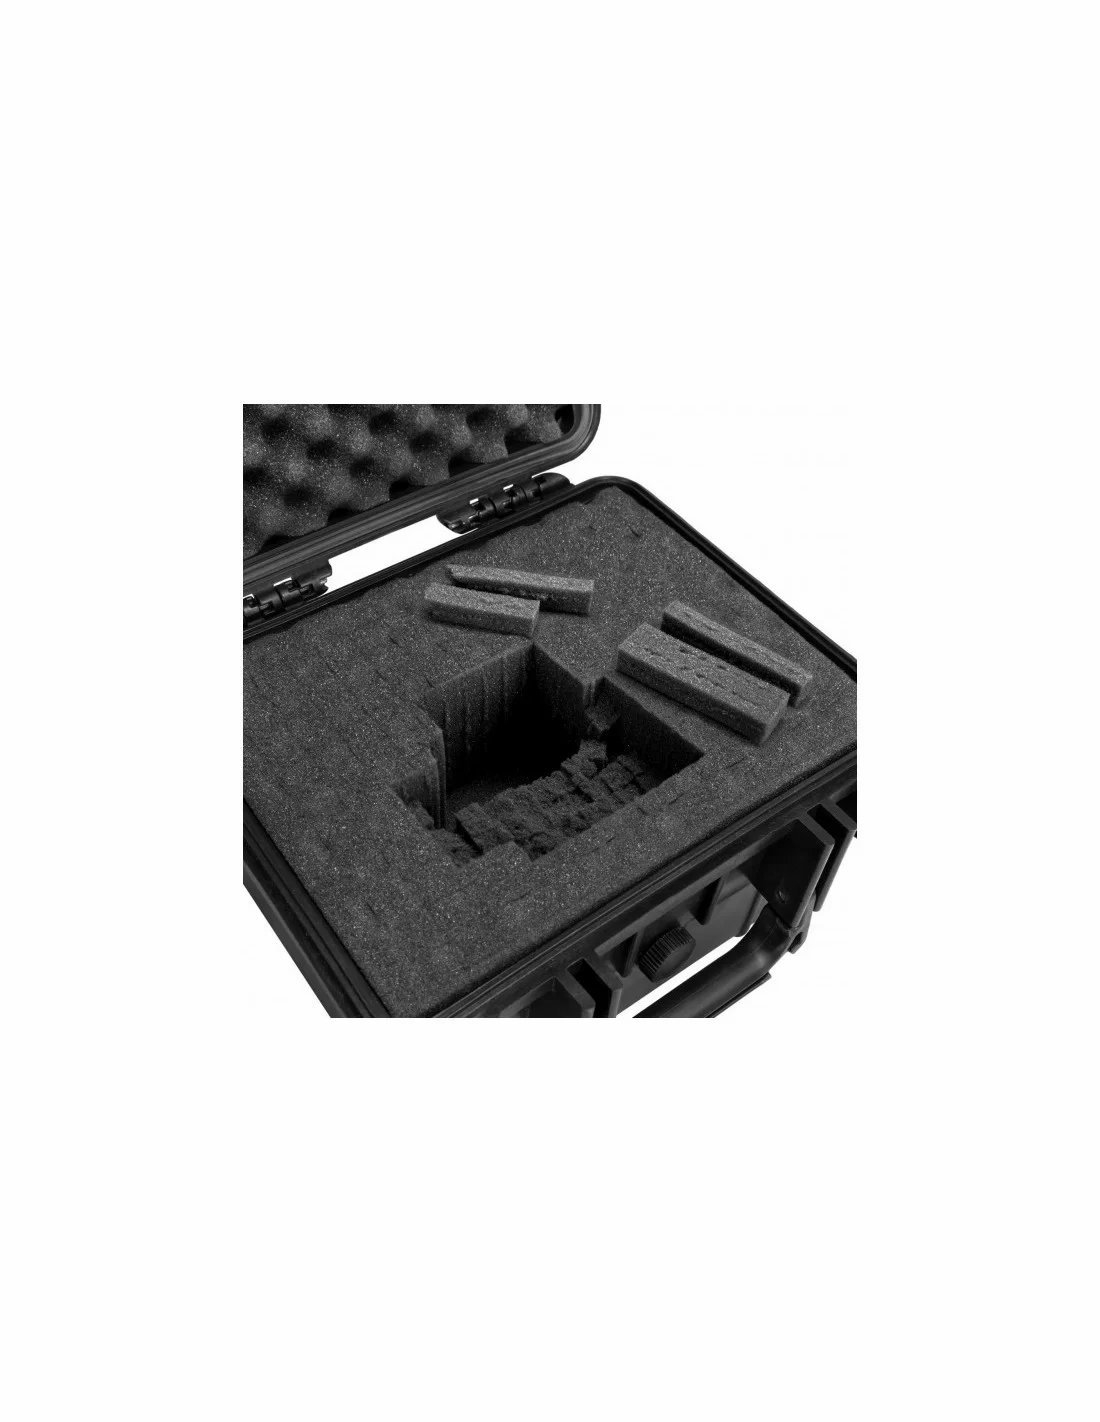 Fatbox VS45 херметически защитен куфар